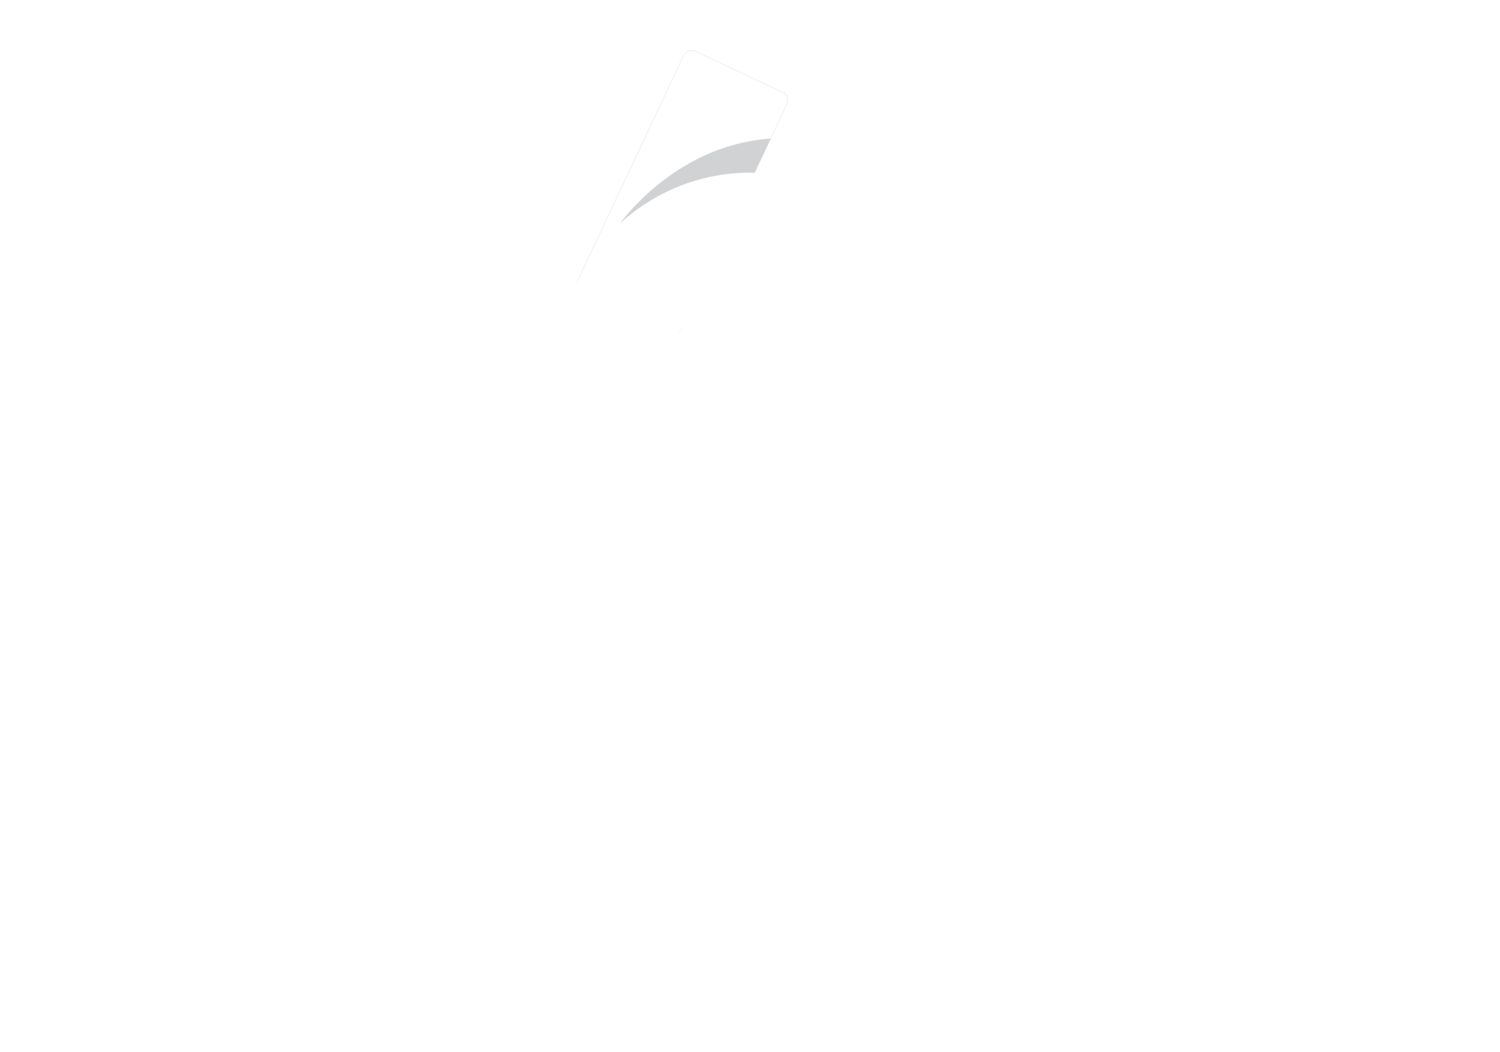 BelieveCam